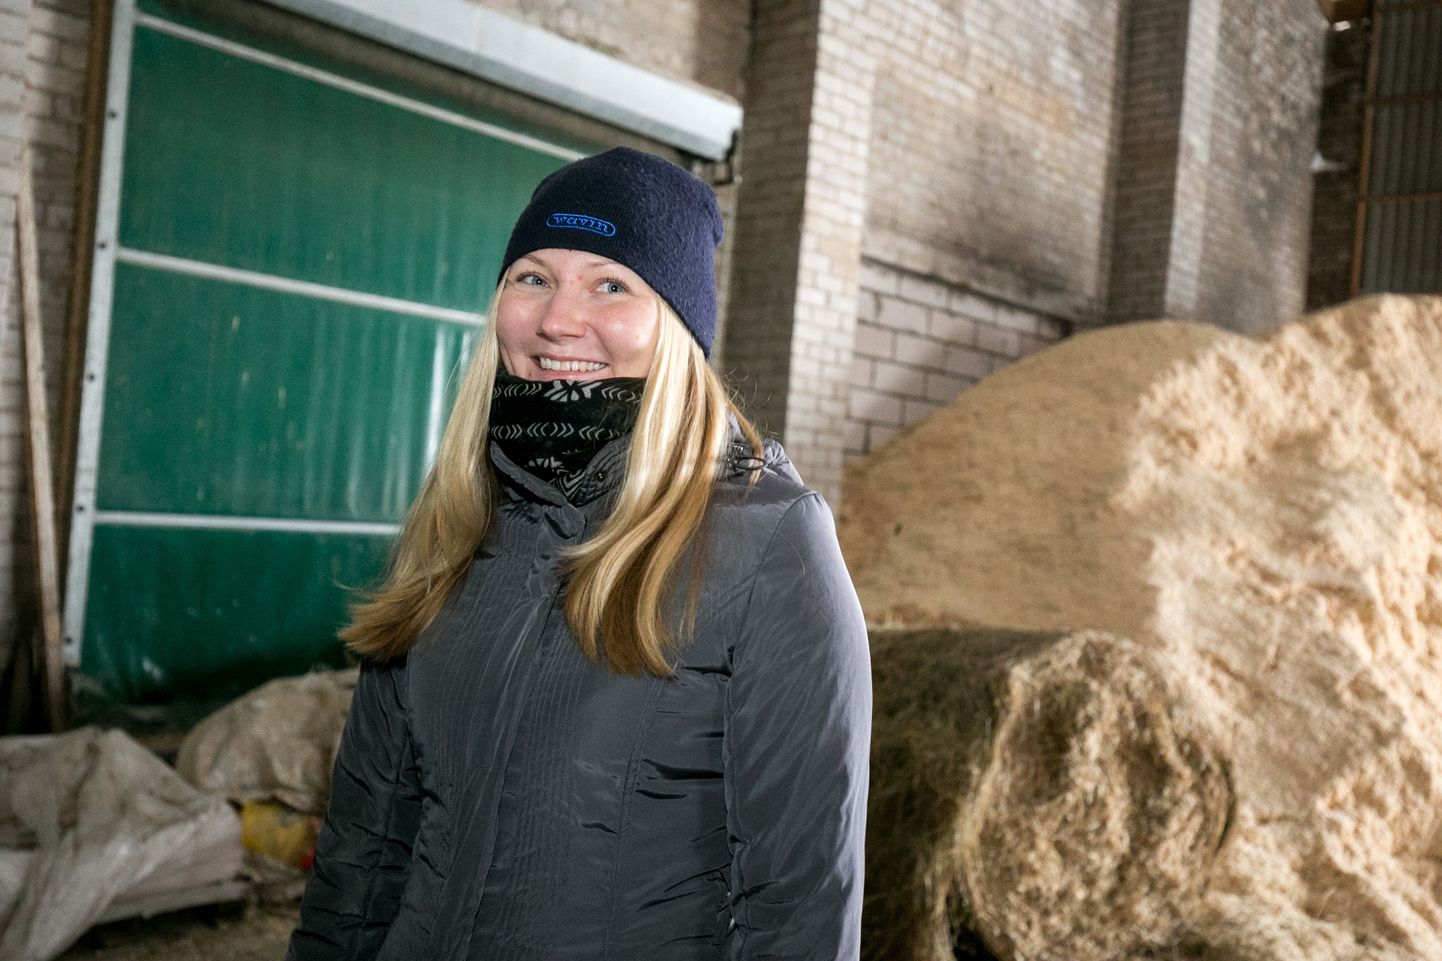 OÜ Kaisma juhatuse liige Ly Kivikas võtab meeleldi oma farmis vastu lastegruppe, et näidata neile, kust piima teekond poodi alguse saab.